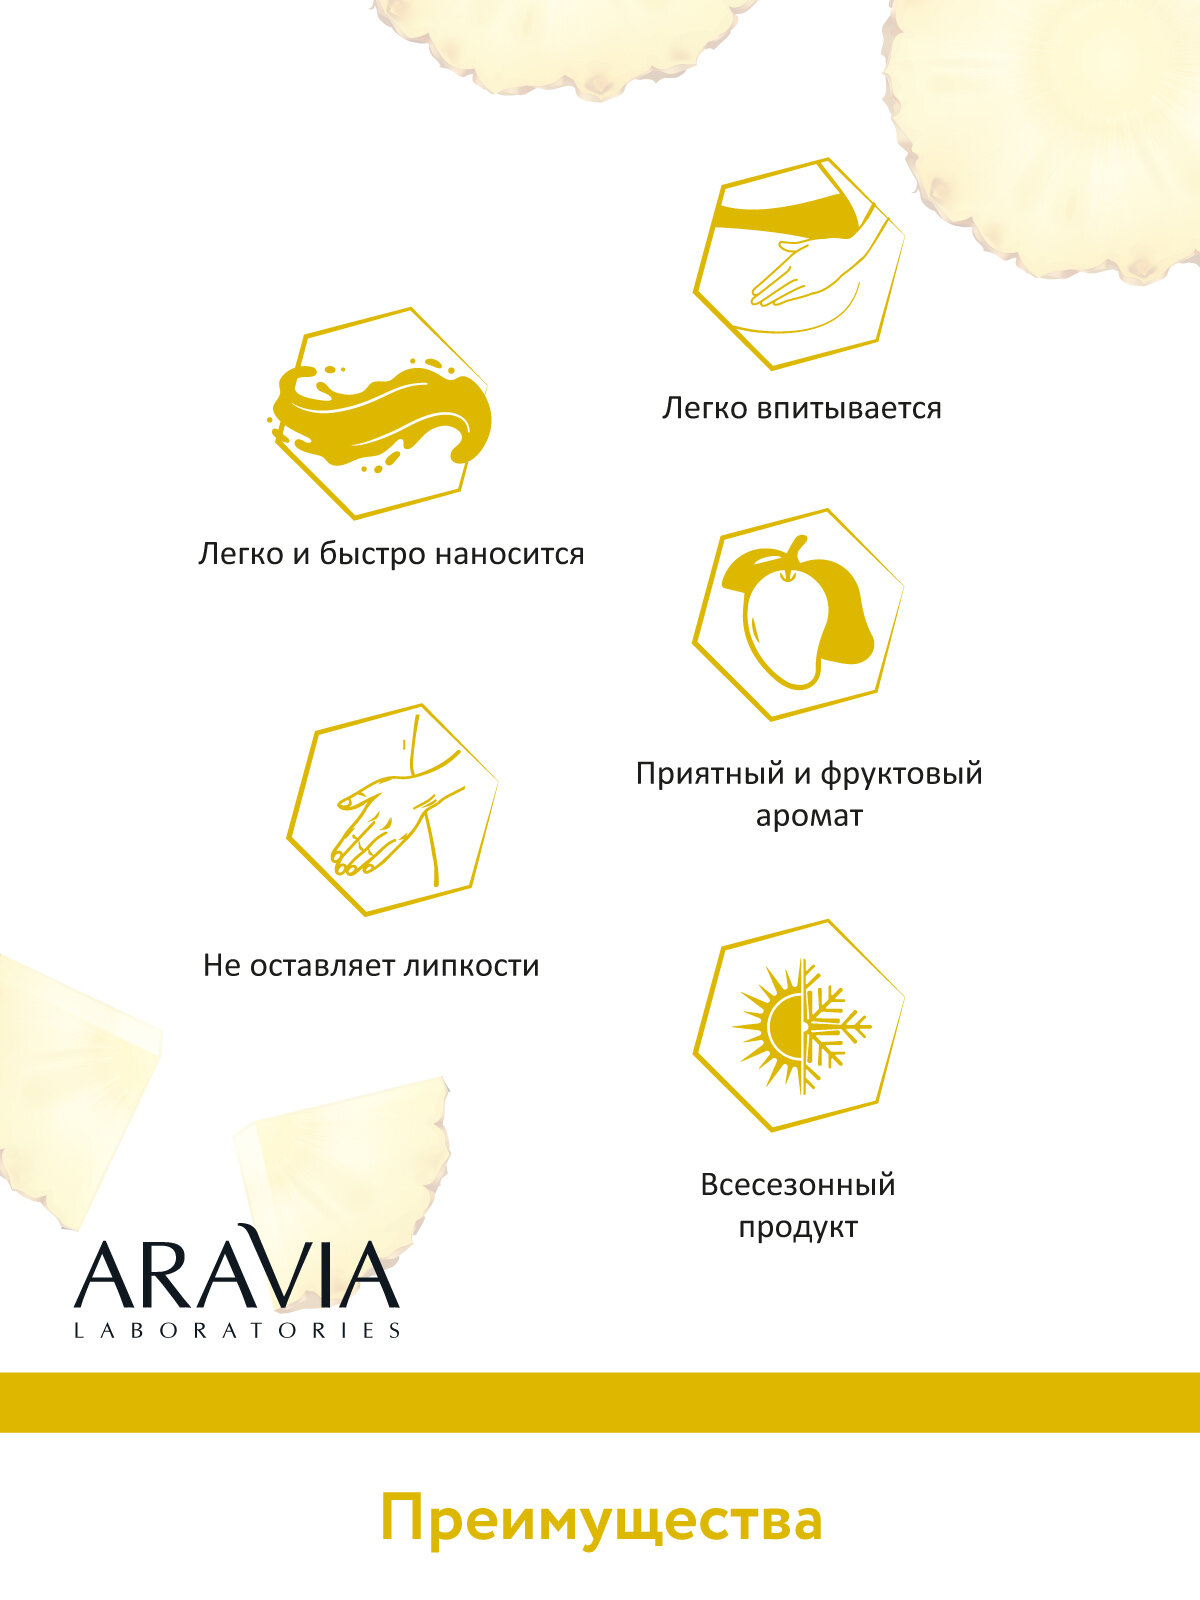 ARAVIA Крем-лифтинг для тела с экстрактом ананаса и коллагеном Pineapple Lifting-Cream, 200 мл